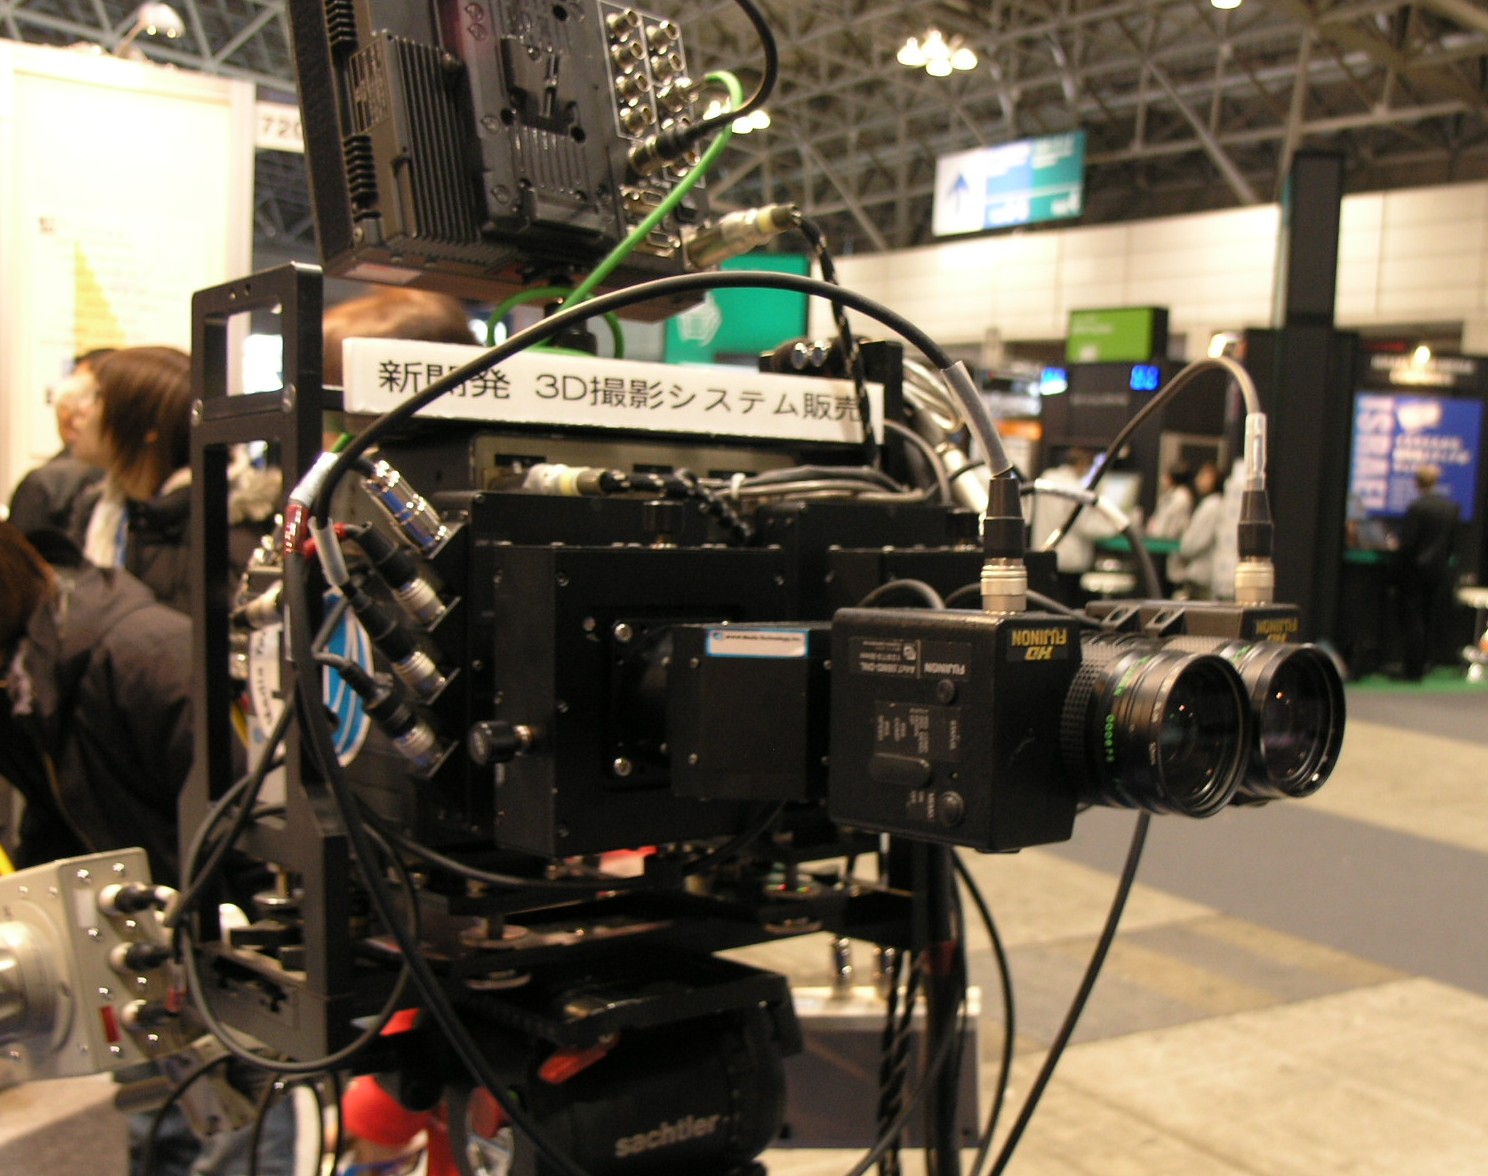 3D camera adapter (NHK-MT).